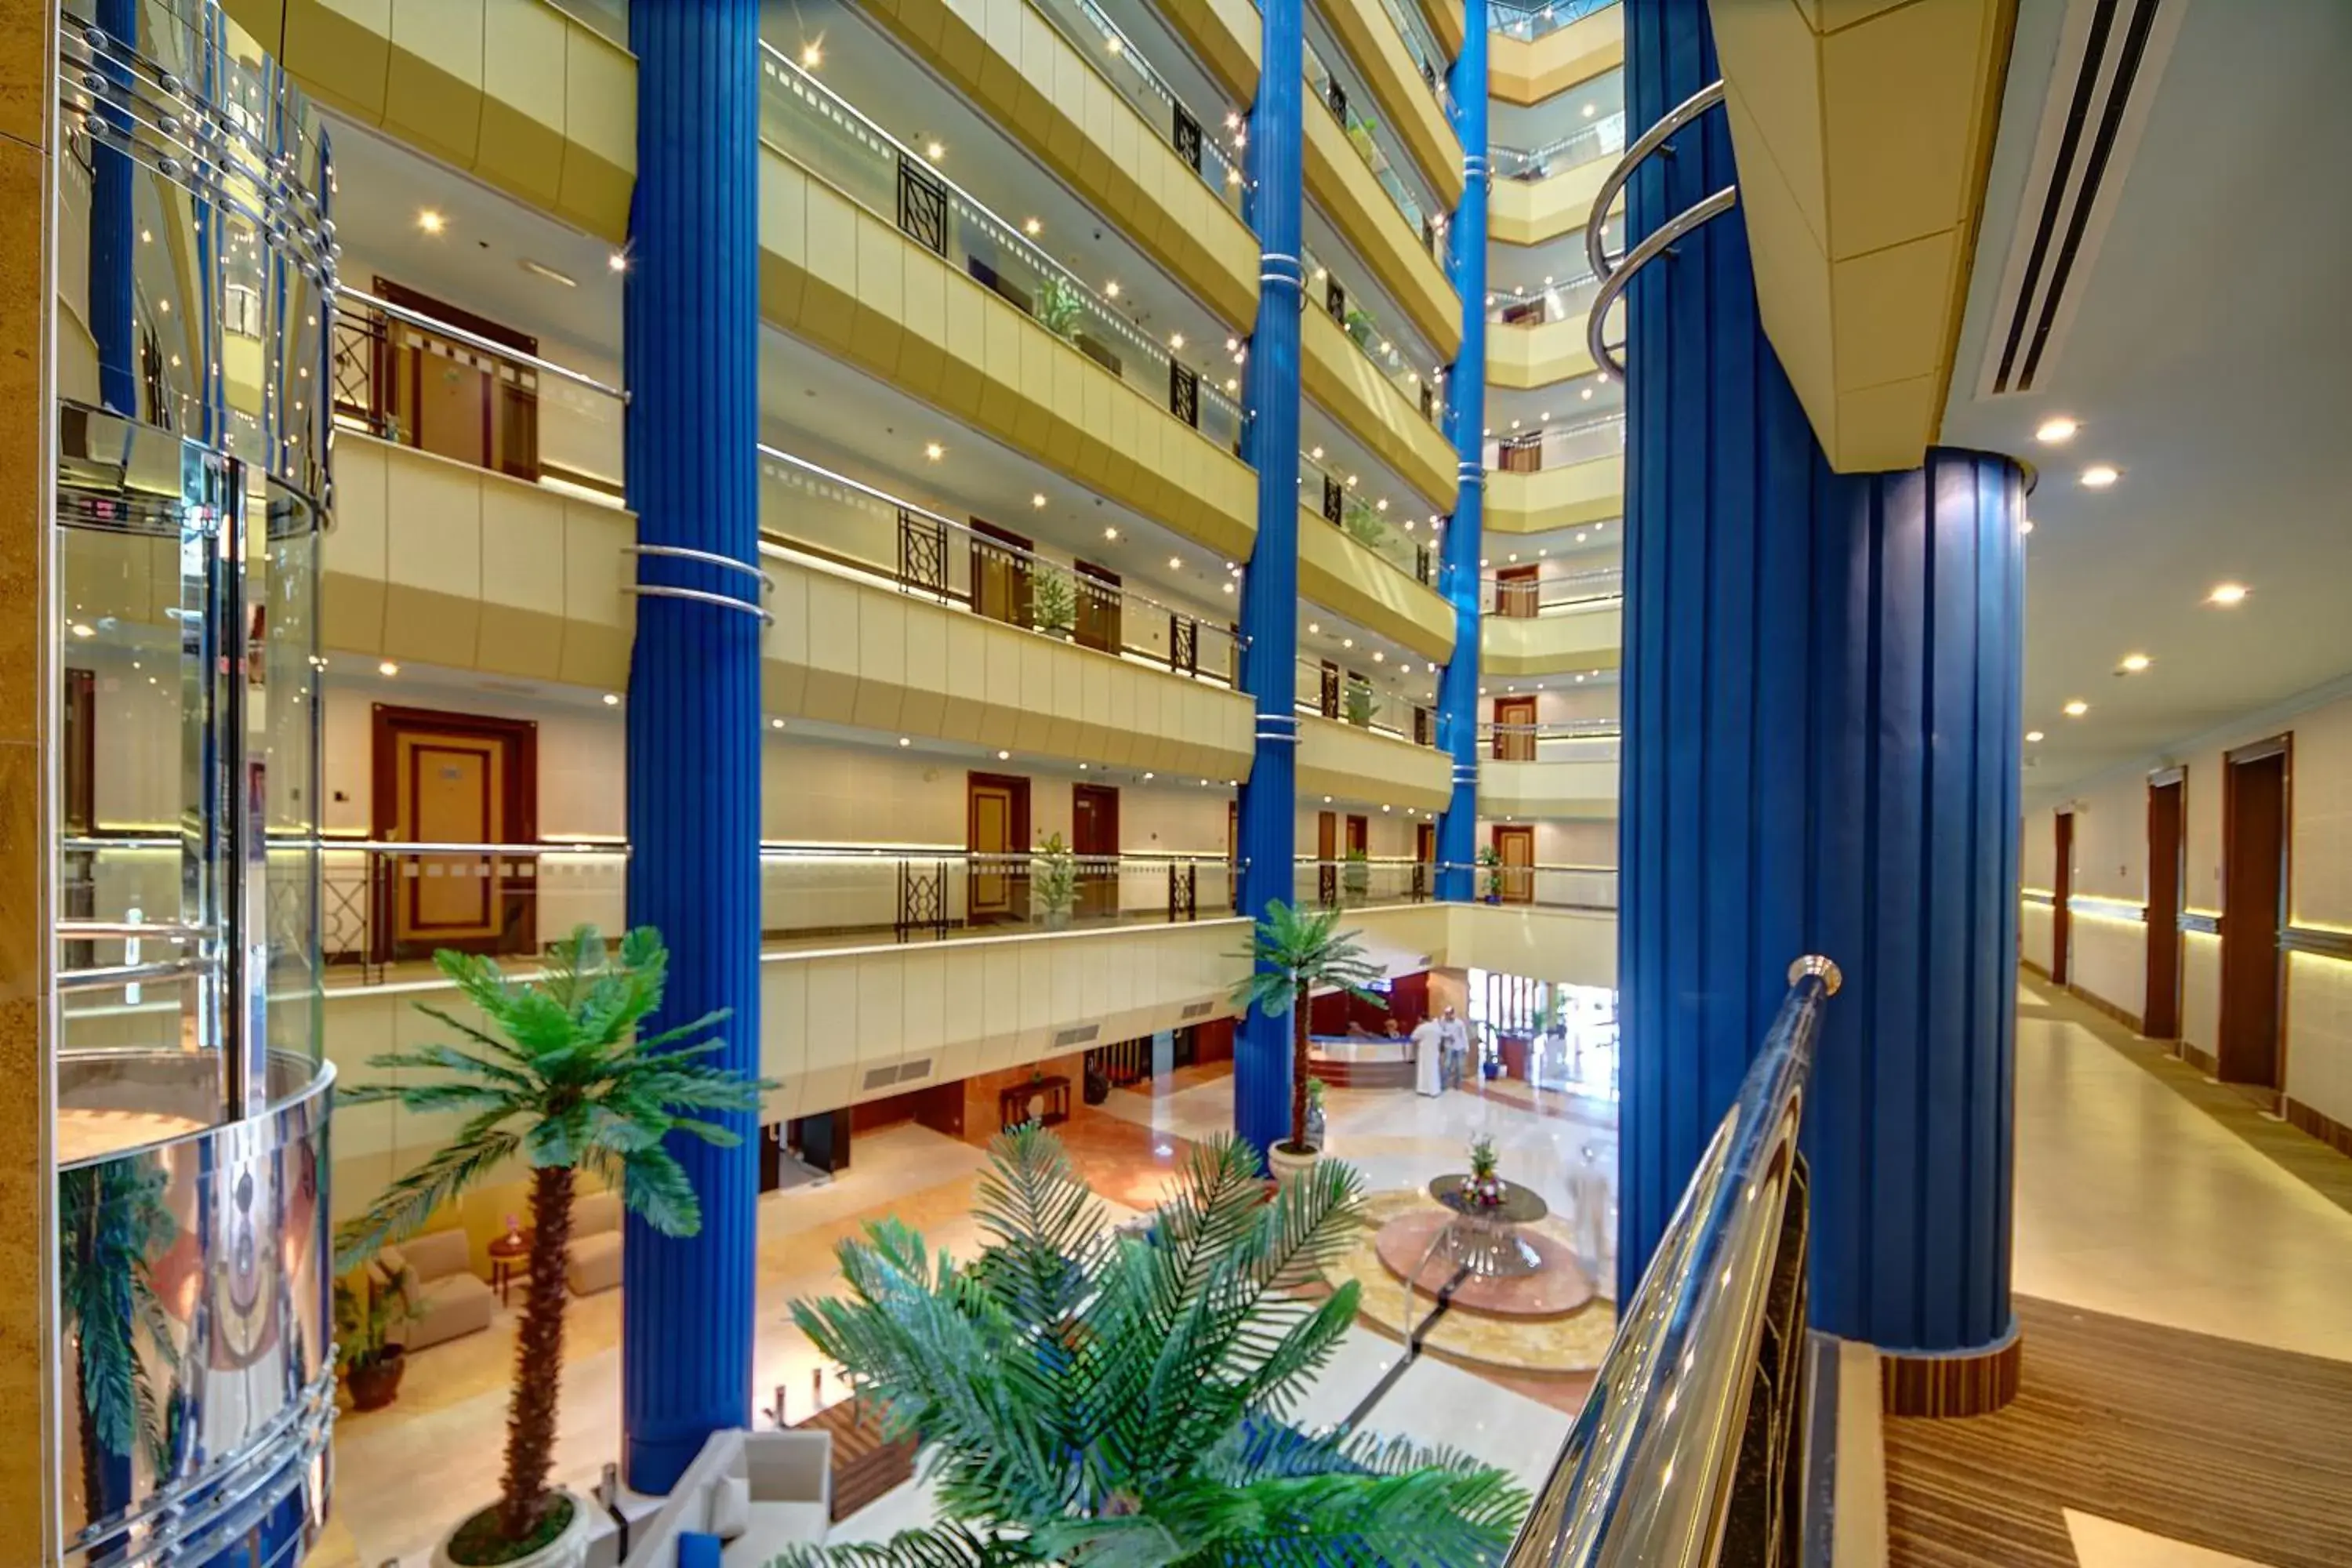 Lobby or reception in Al Manar Grand Hotel Apartment